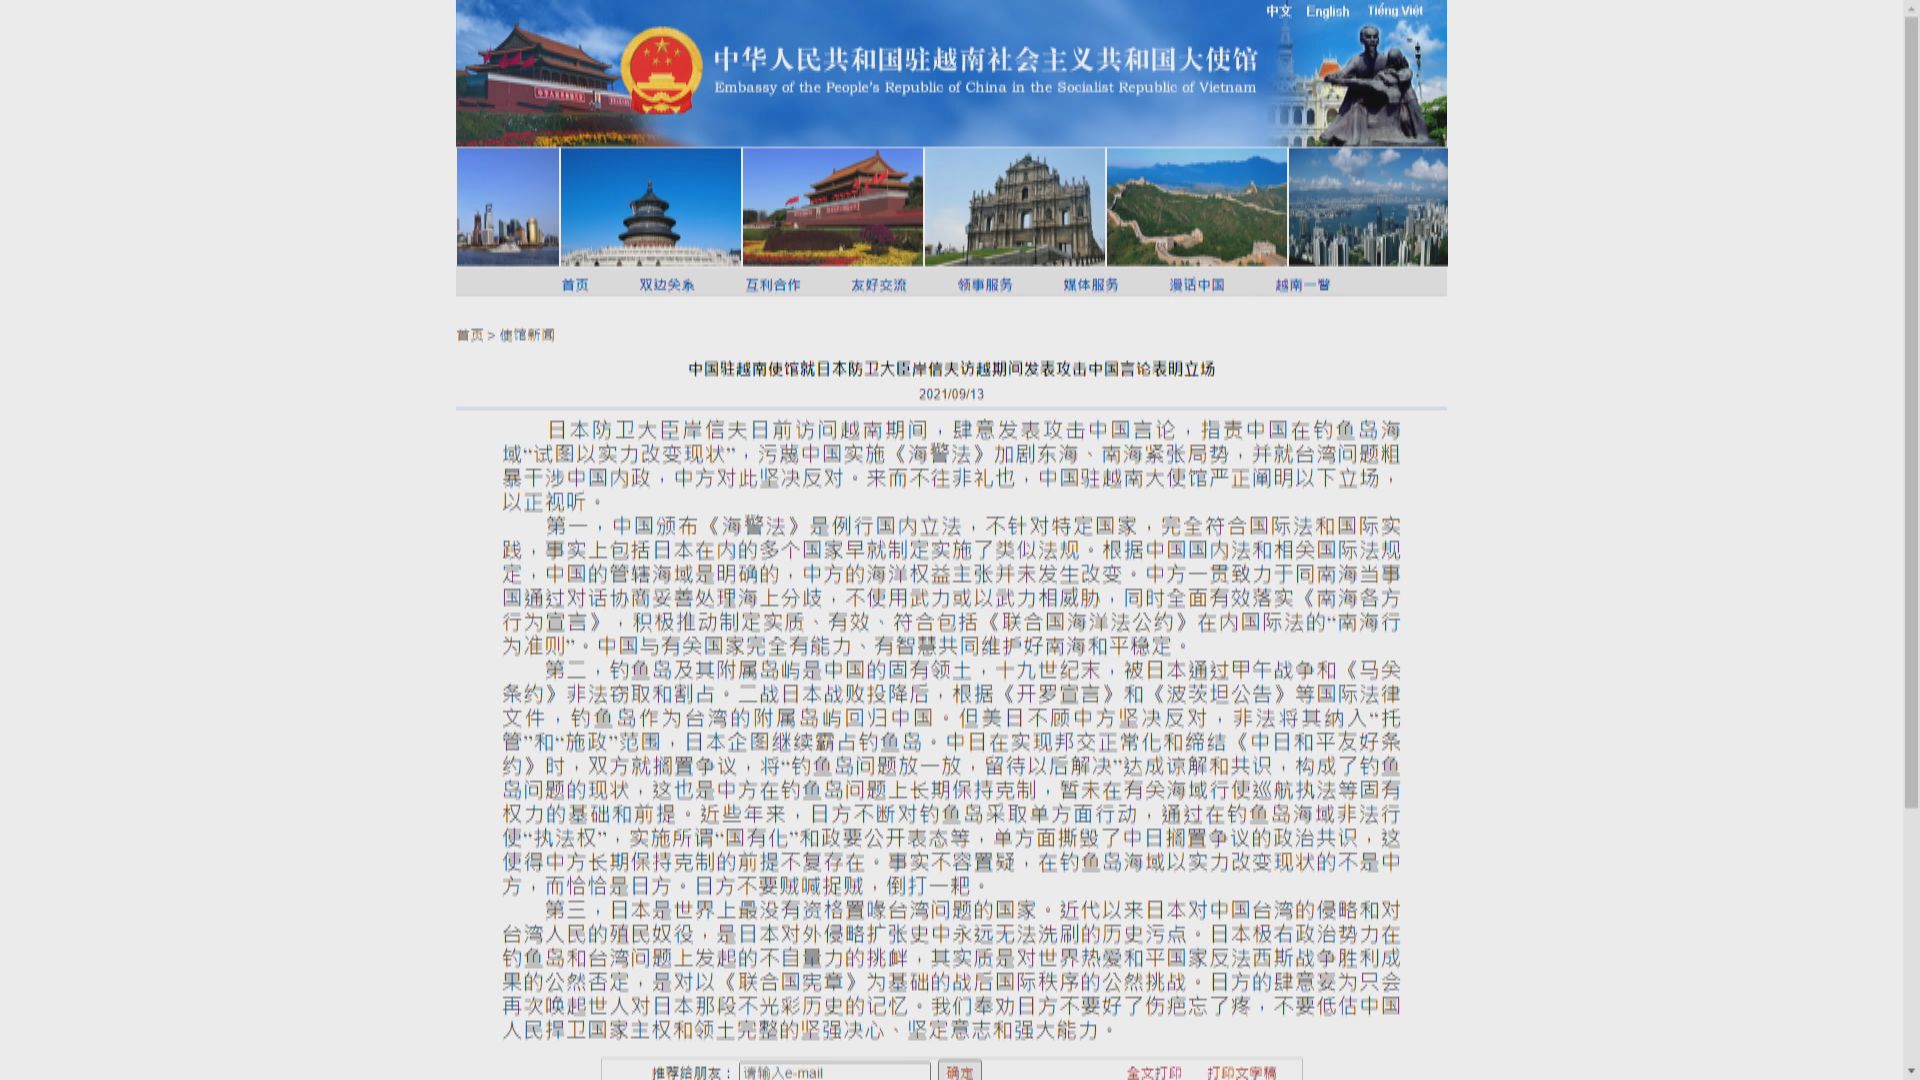 中國駐越使館批評日防相污蔑中國實施《海警法》